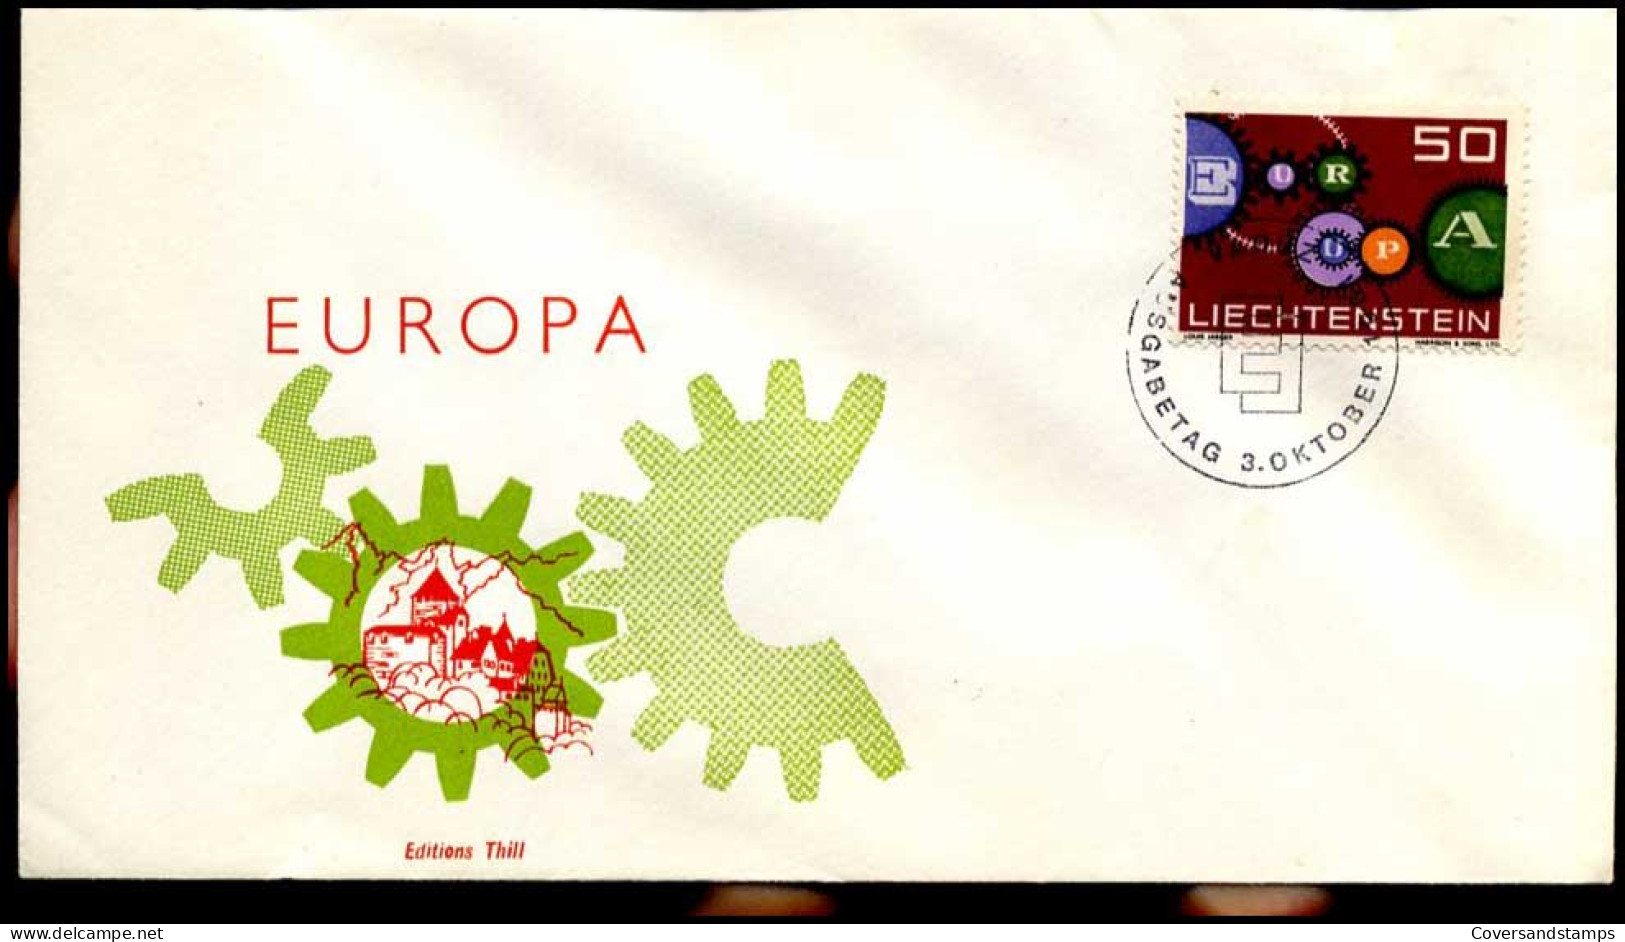  Liechtenstein - FDC - Europa CEPT 1961 - 1961